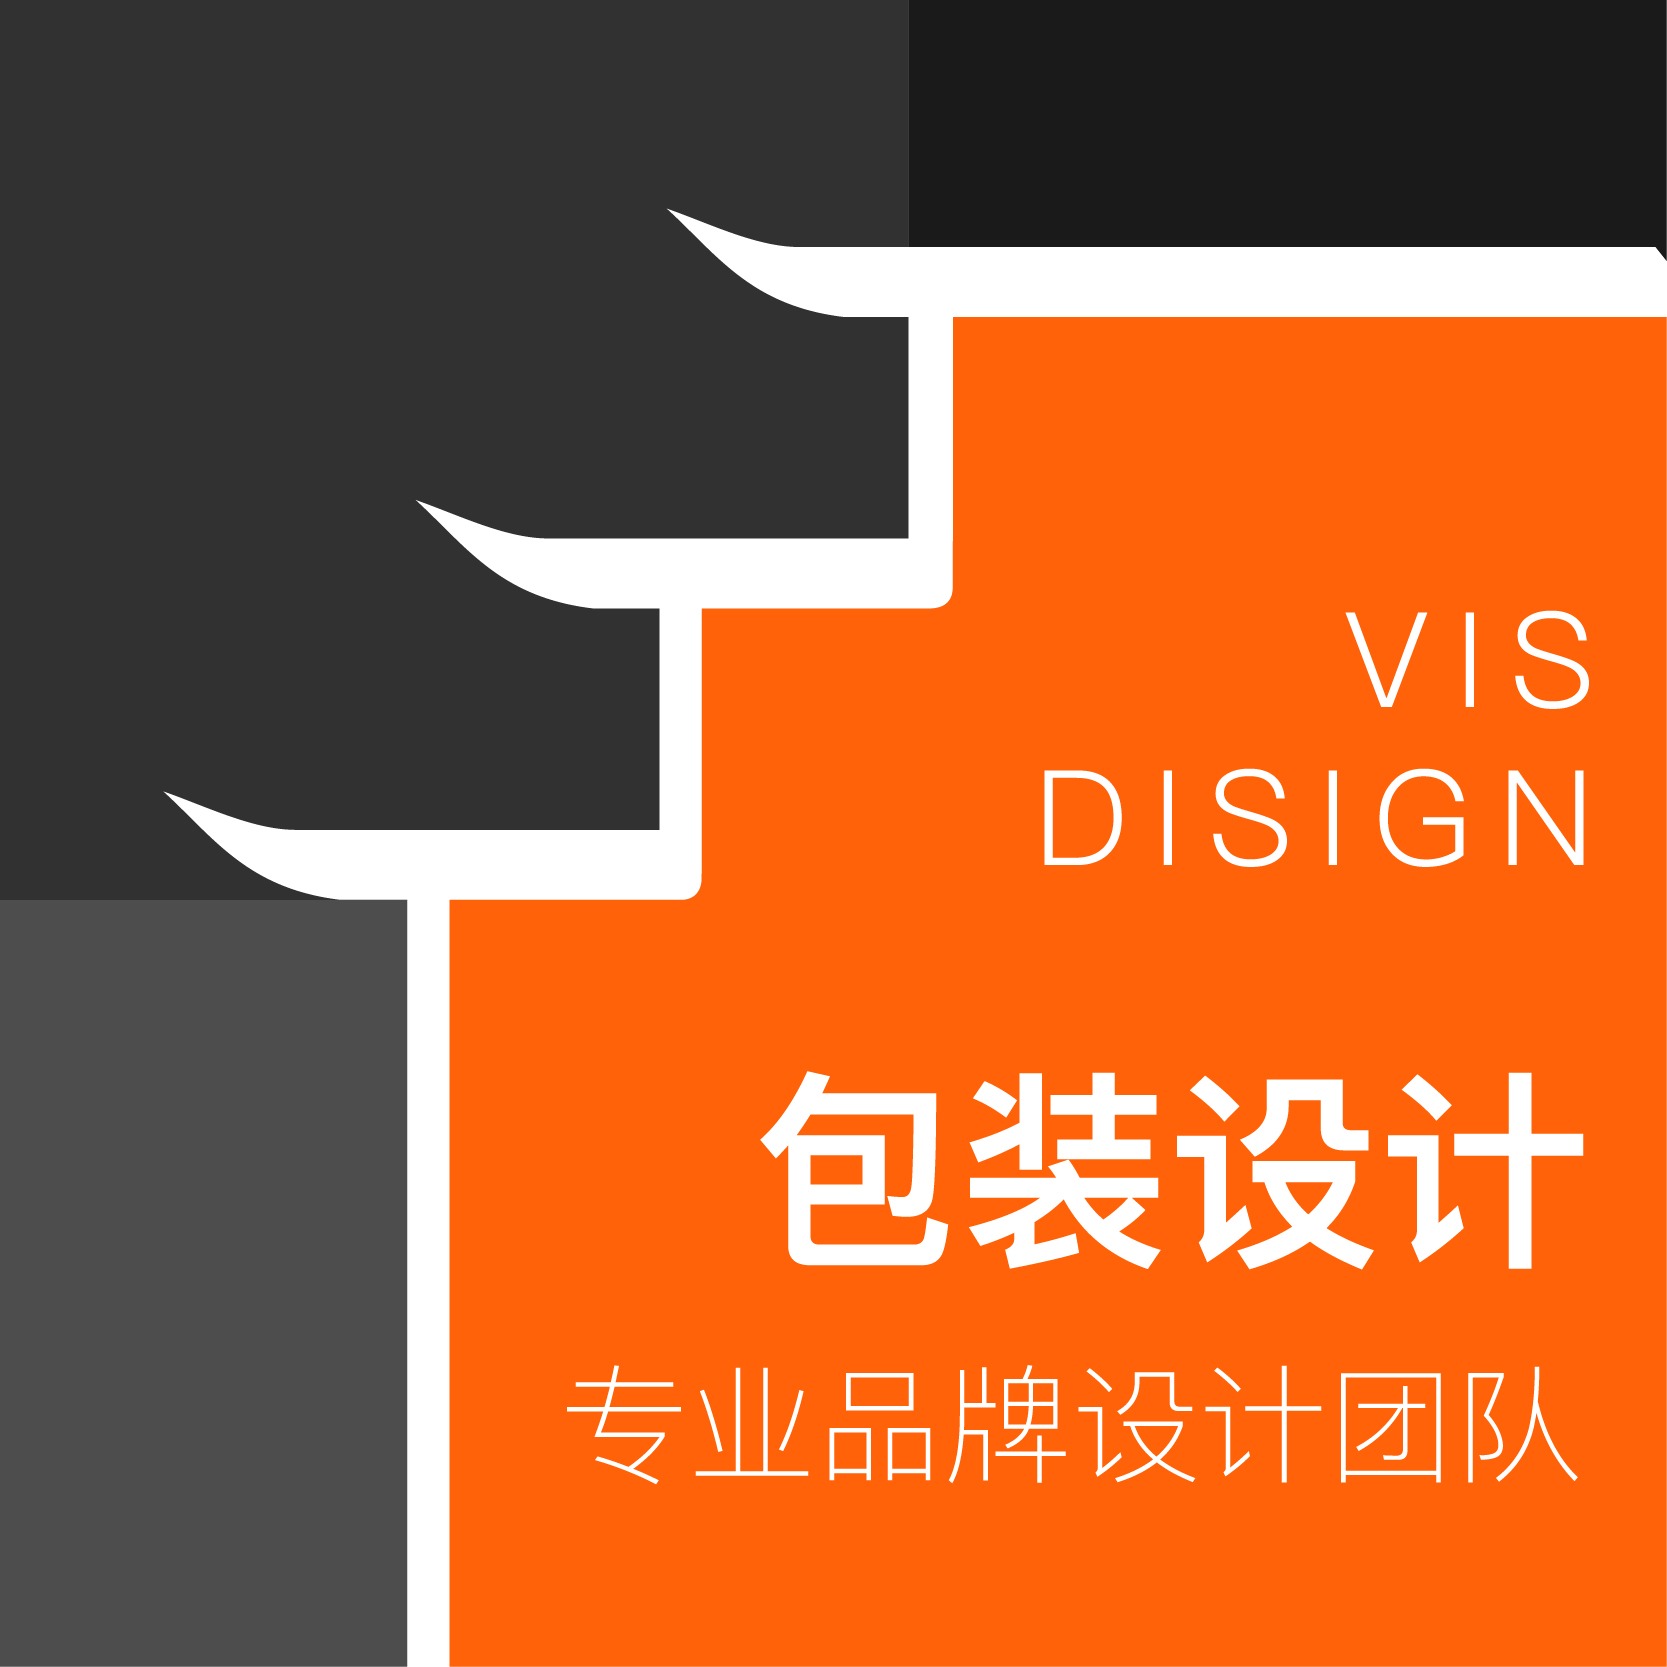 【包装设计】企业LOGO设计企业VIS设计画册设计包装设计